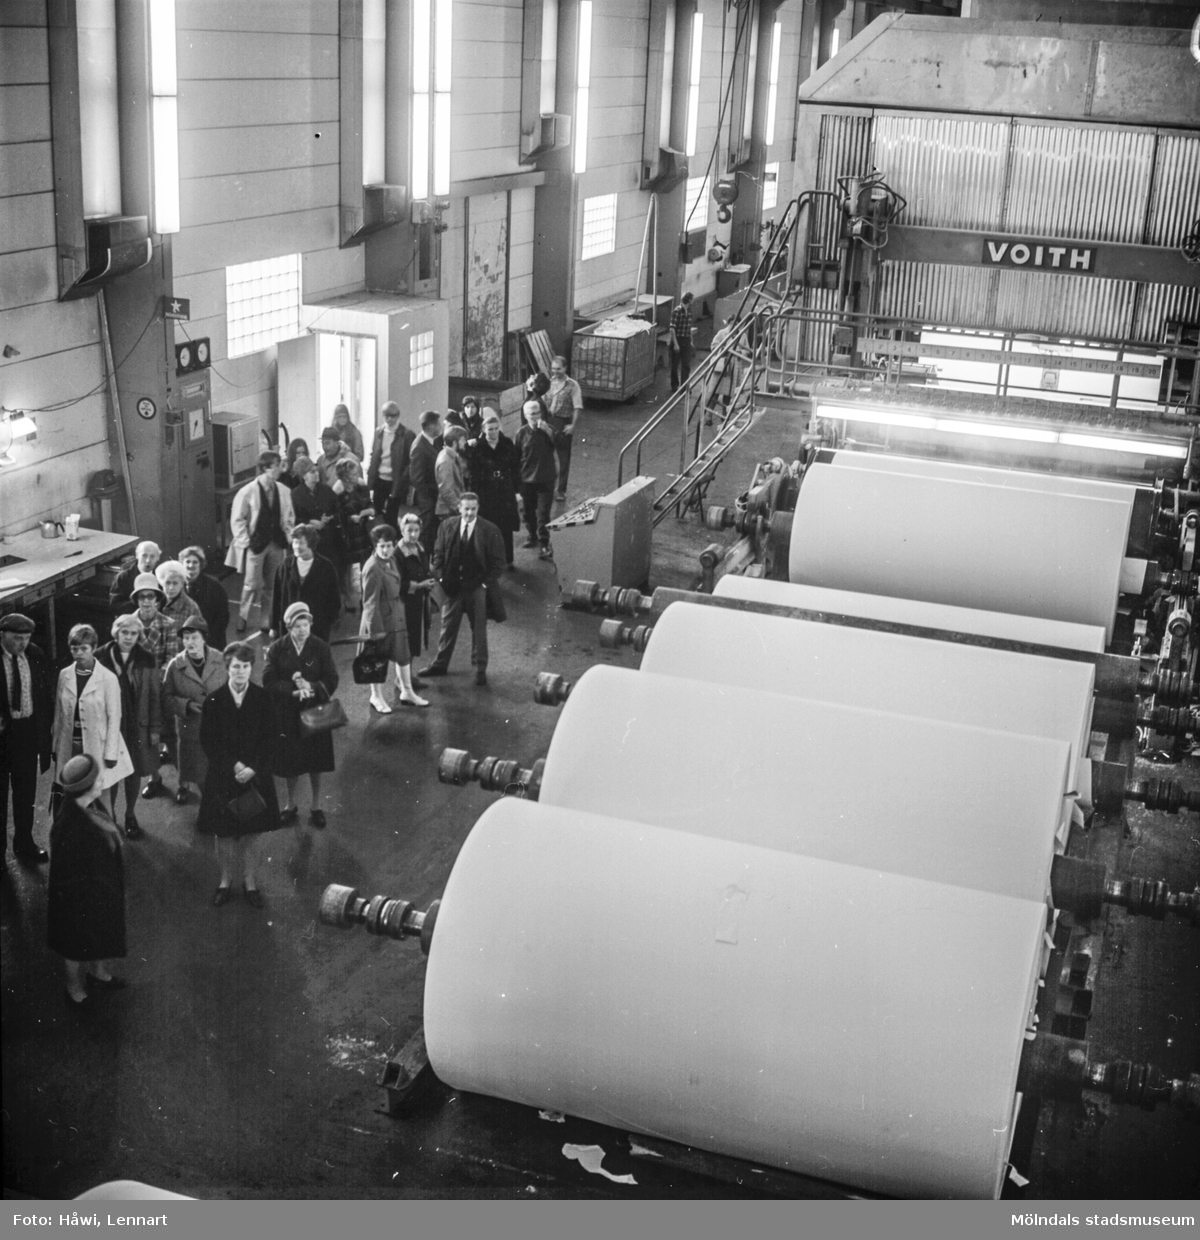 Fabriksvisning vid Pappersmaskinen Nr 5 (PM5) på Pappersbruket Papyrus i Mölndal, 10/10-1970.
Visning för Papyrus anställdas anhöriga.